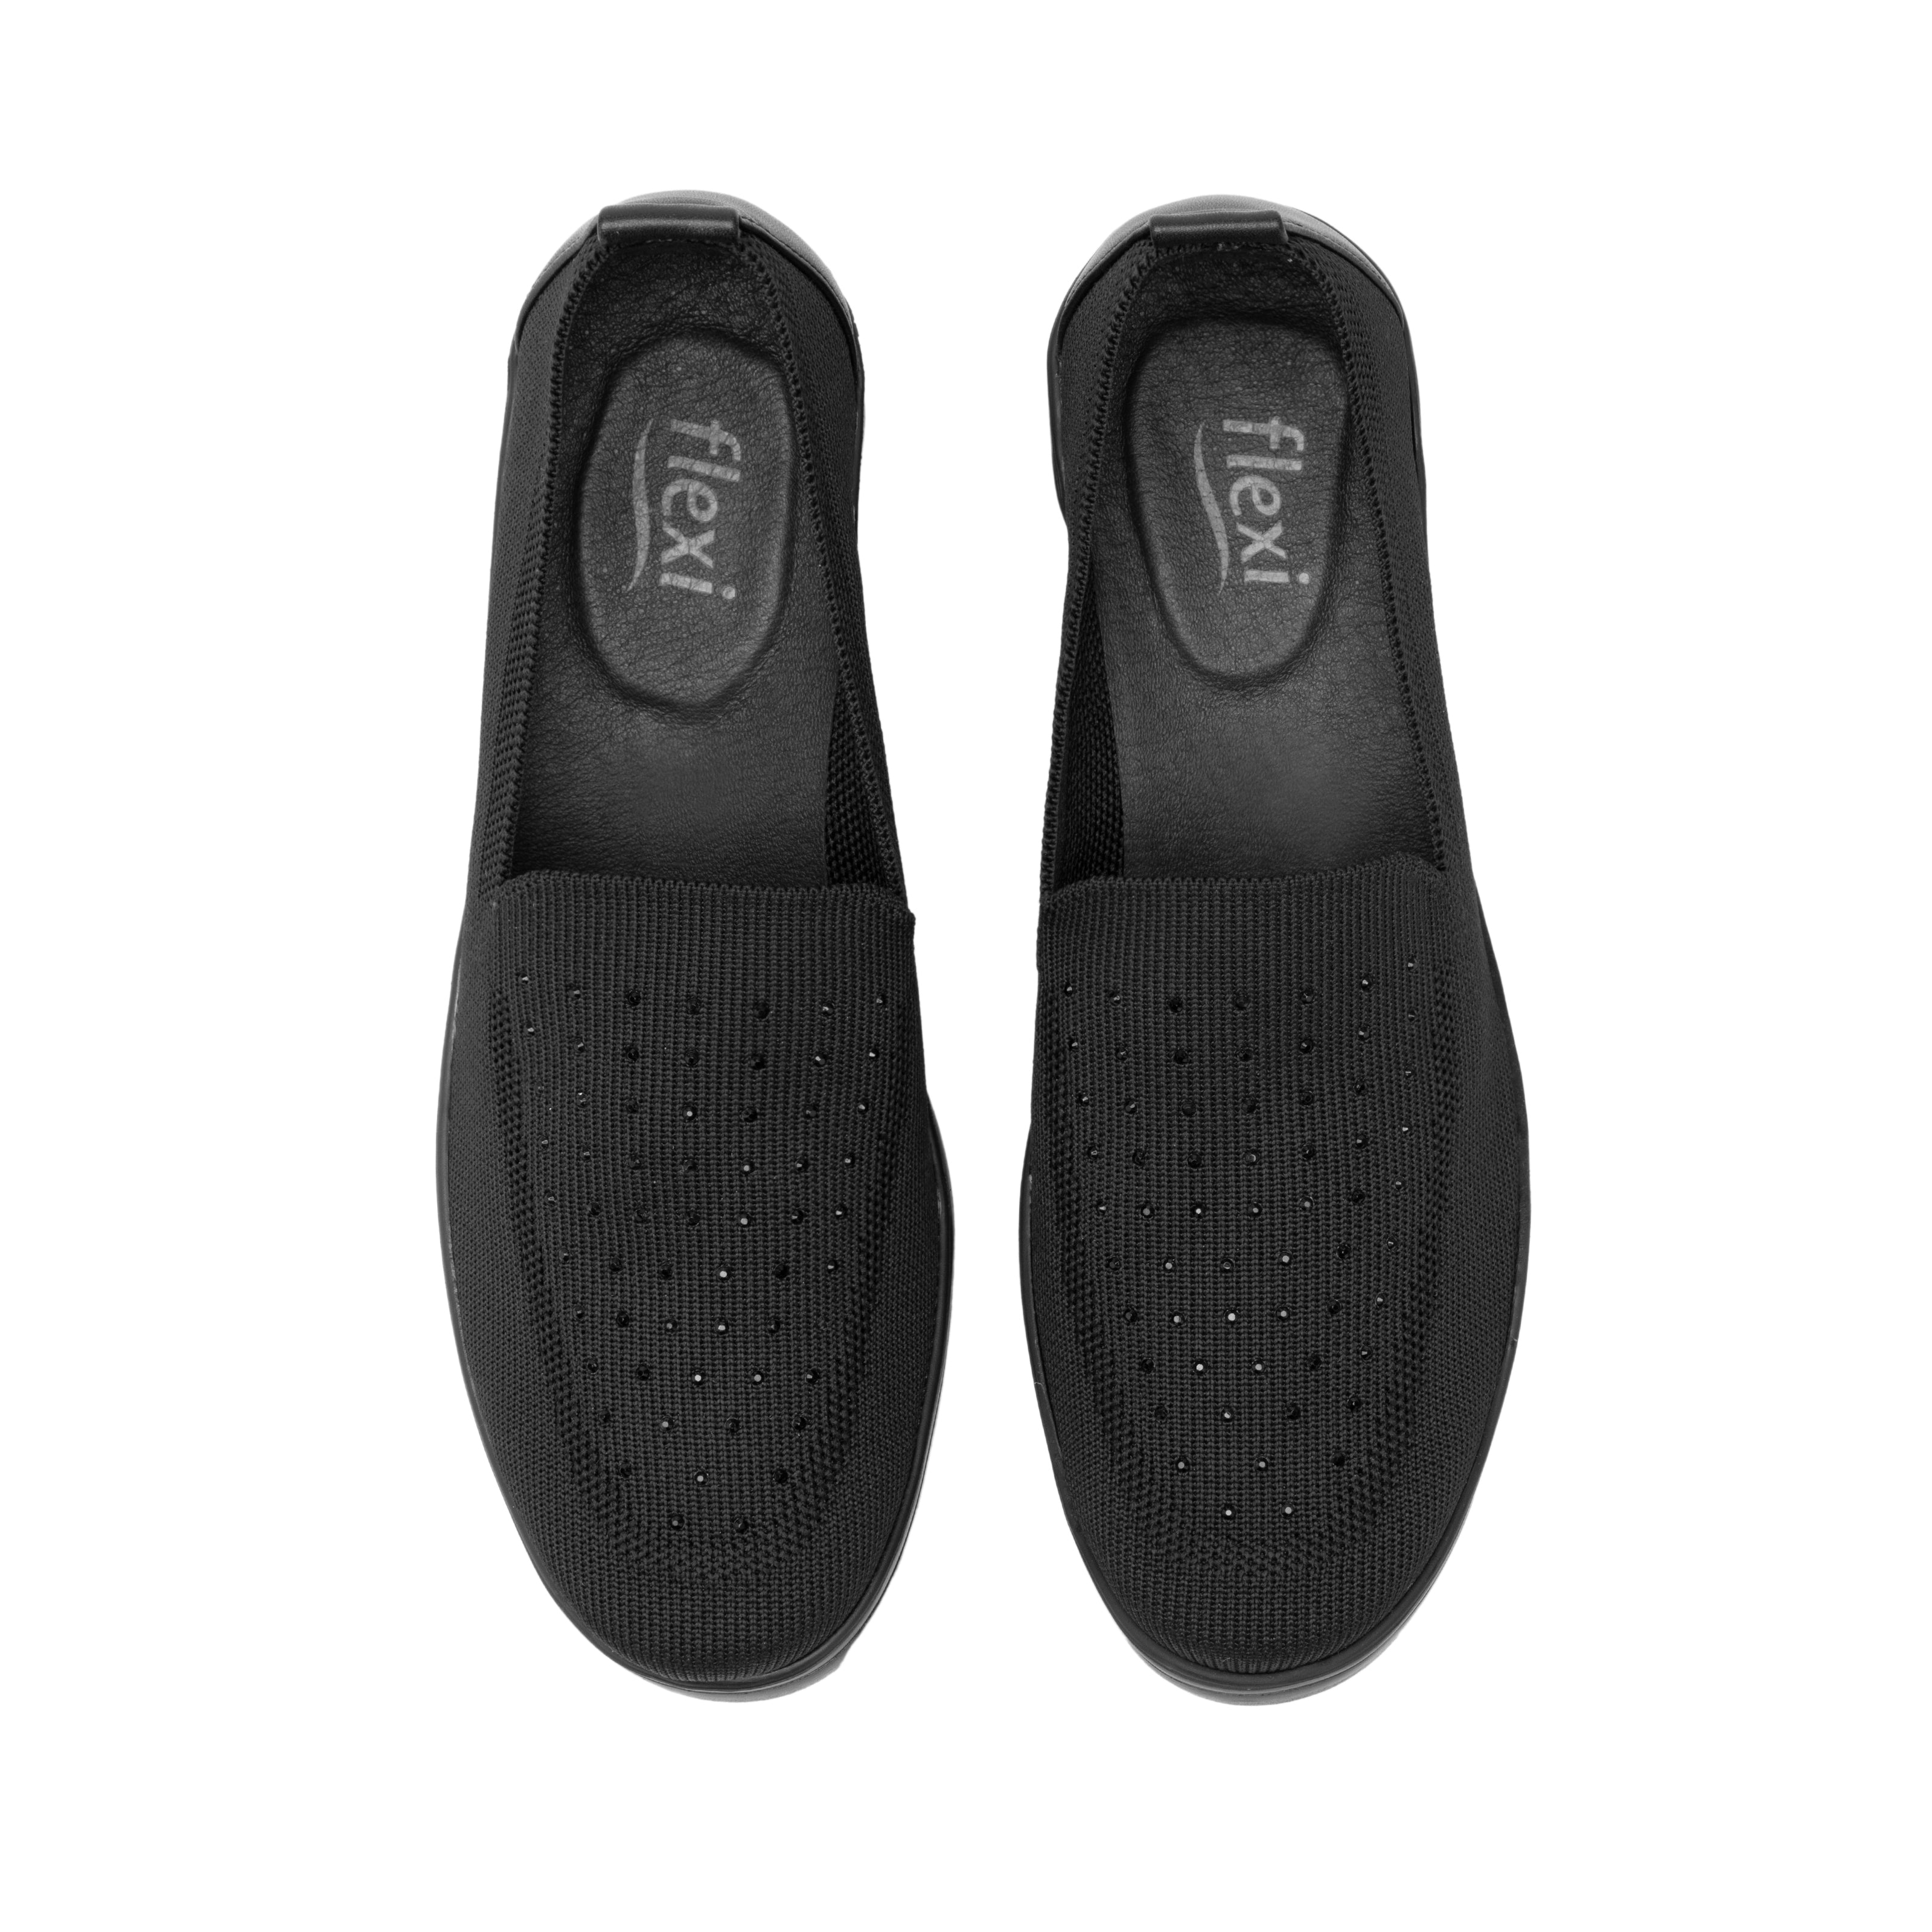 Zapato Confort Flexi Negro para Mujer [FFF3606] - Zapaterias Torreon